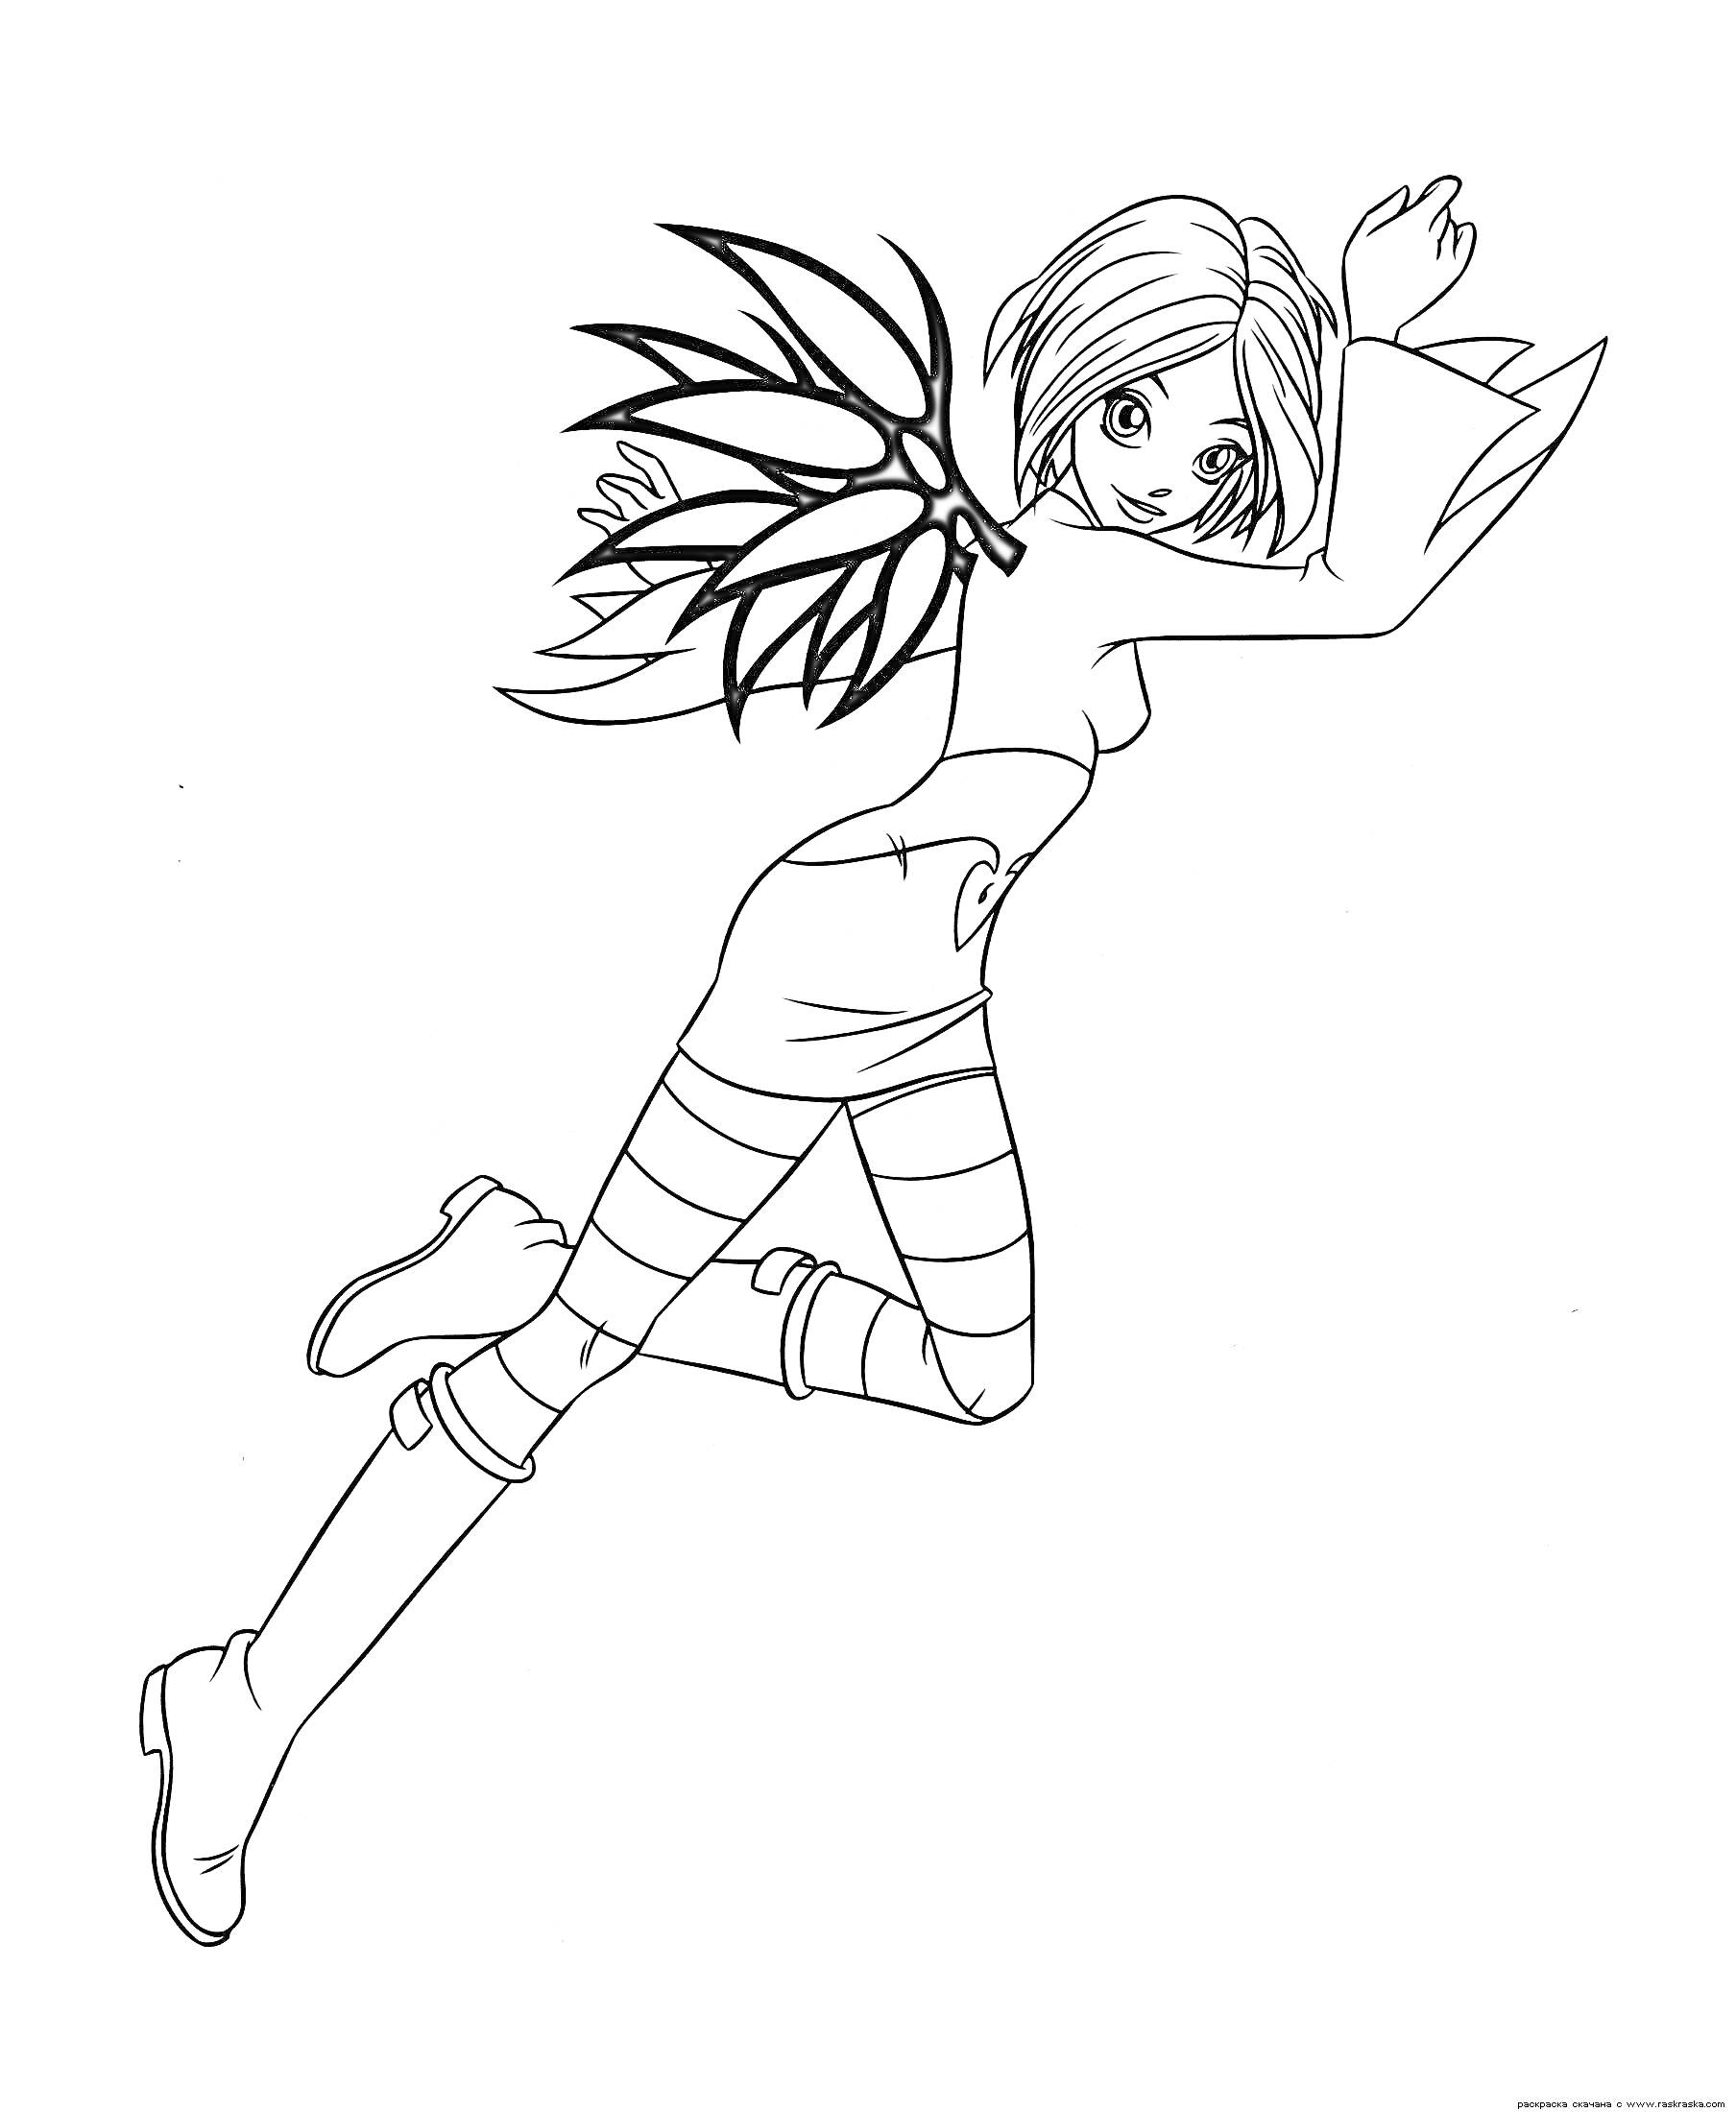 Раскраска Девушка-чародейка с крыльями, волосы средней длины, одета в сапоги и юбку с поясом, на руках длинные перчатки